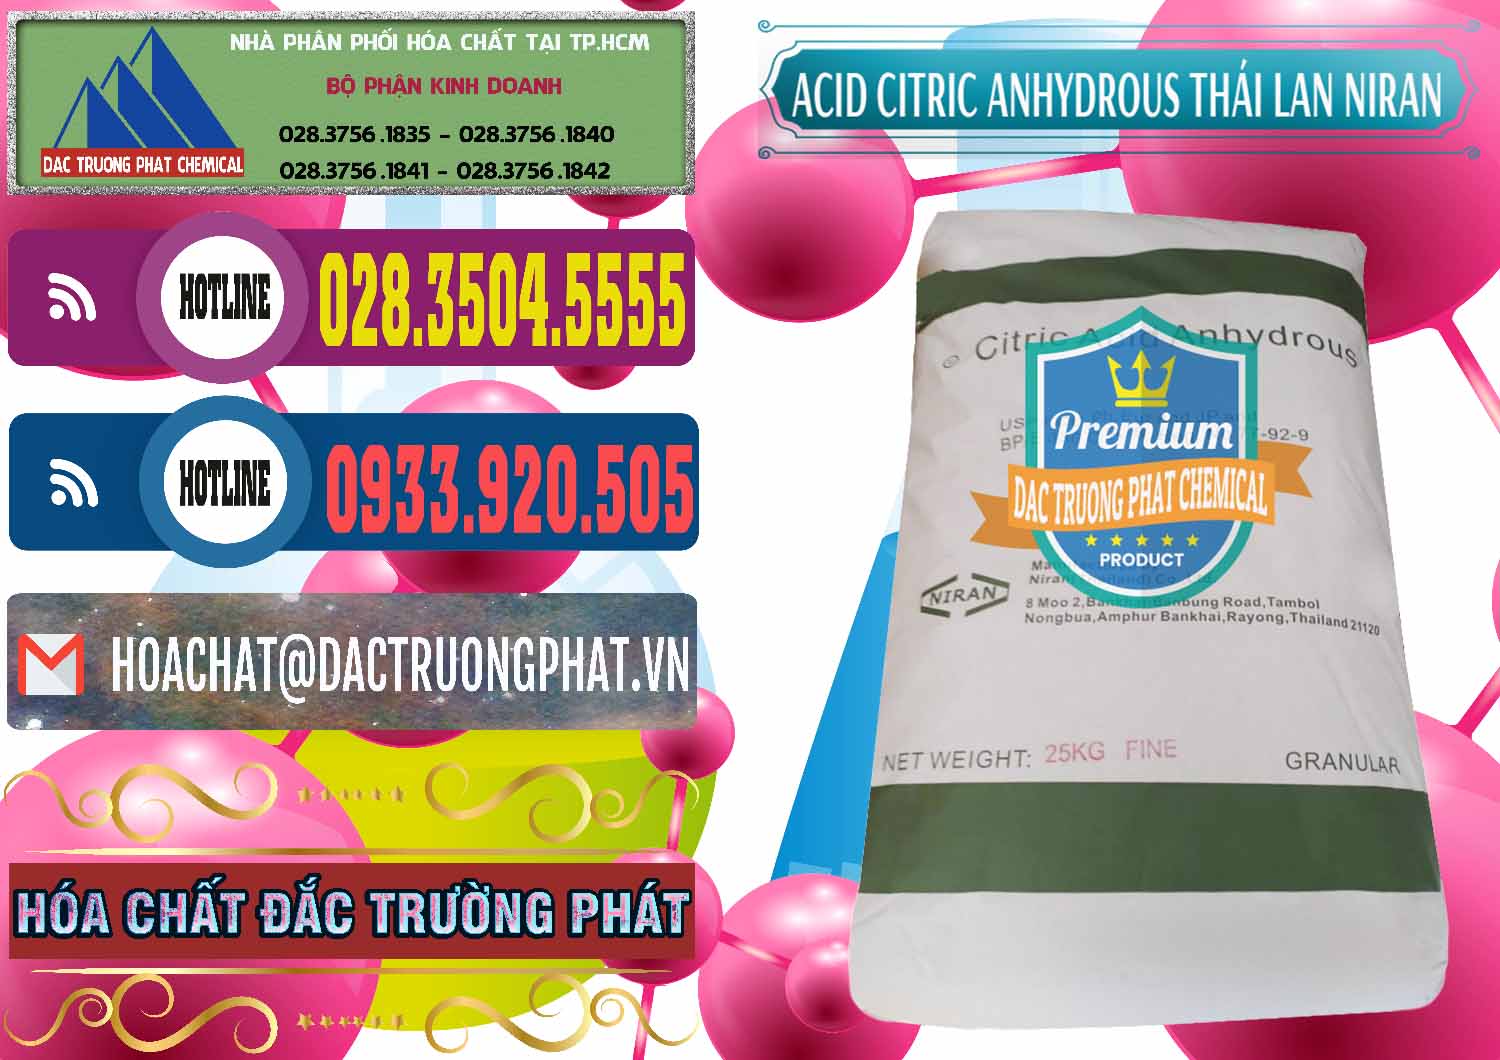 Chuyên bán - cung cấp Acid Citric - Axit Citric Anhydrous - Thái Lan Niran - 0231 - Đơn vị chuyên phân phối và bán hóa chất tại TP.HCM - muabanhoachat.com.vn